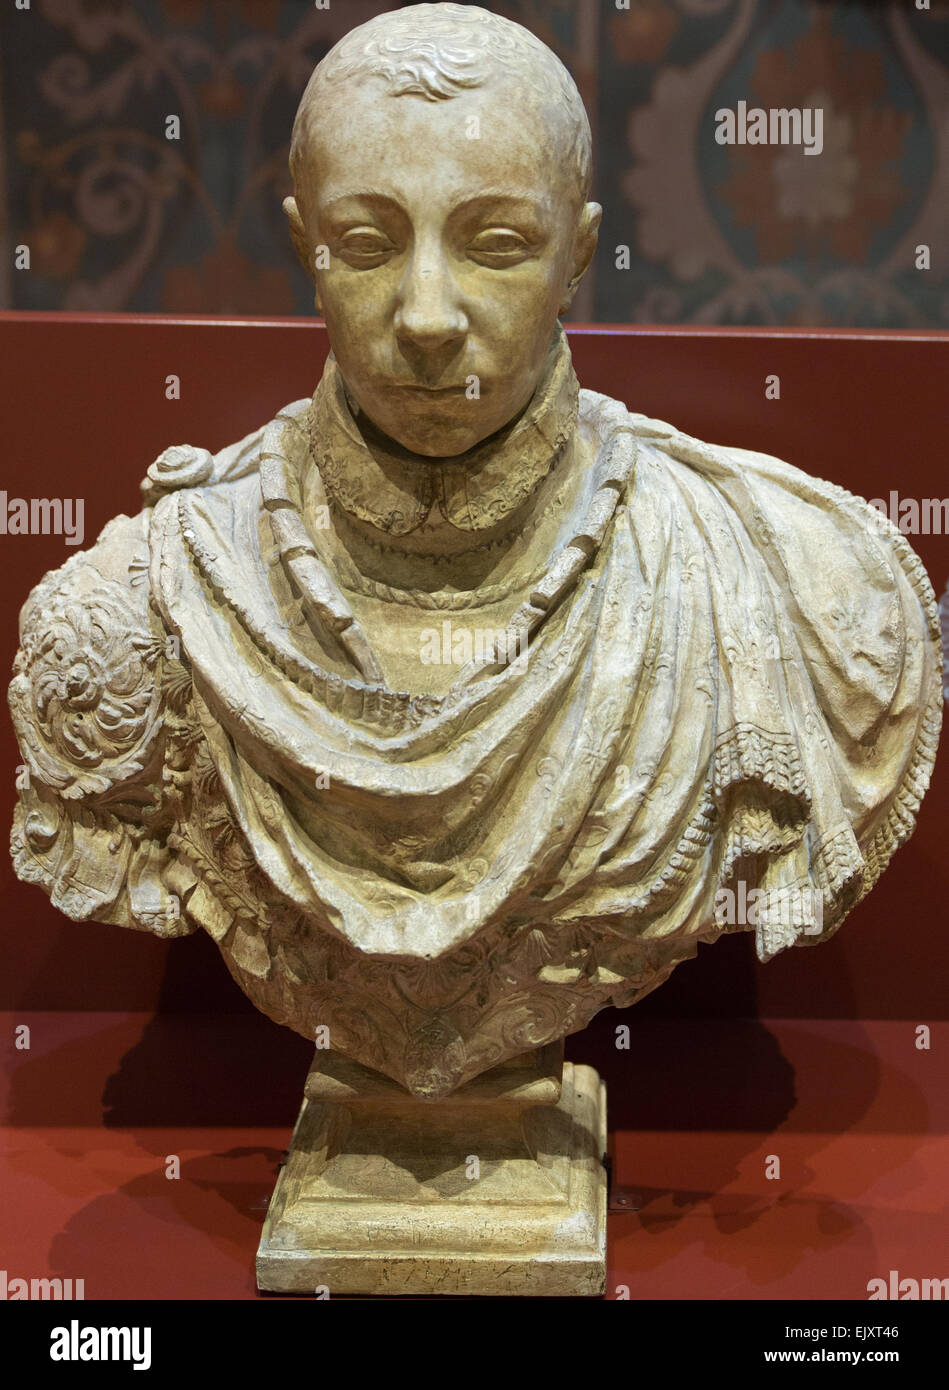 ActiveMuseum 0005751.jpg / Carlos IX, Rey de Francia en 1560, de acuerdo con el busto de Germain Pilon mantuvo en el Louvre 05/12/2013 - siglo XVI / Colección / Museo Activo Foto de stock